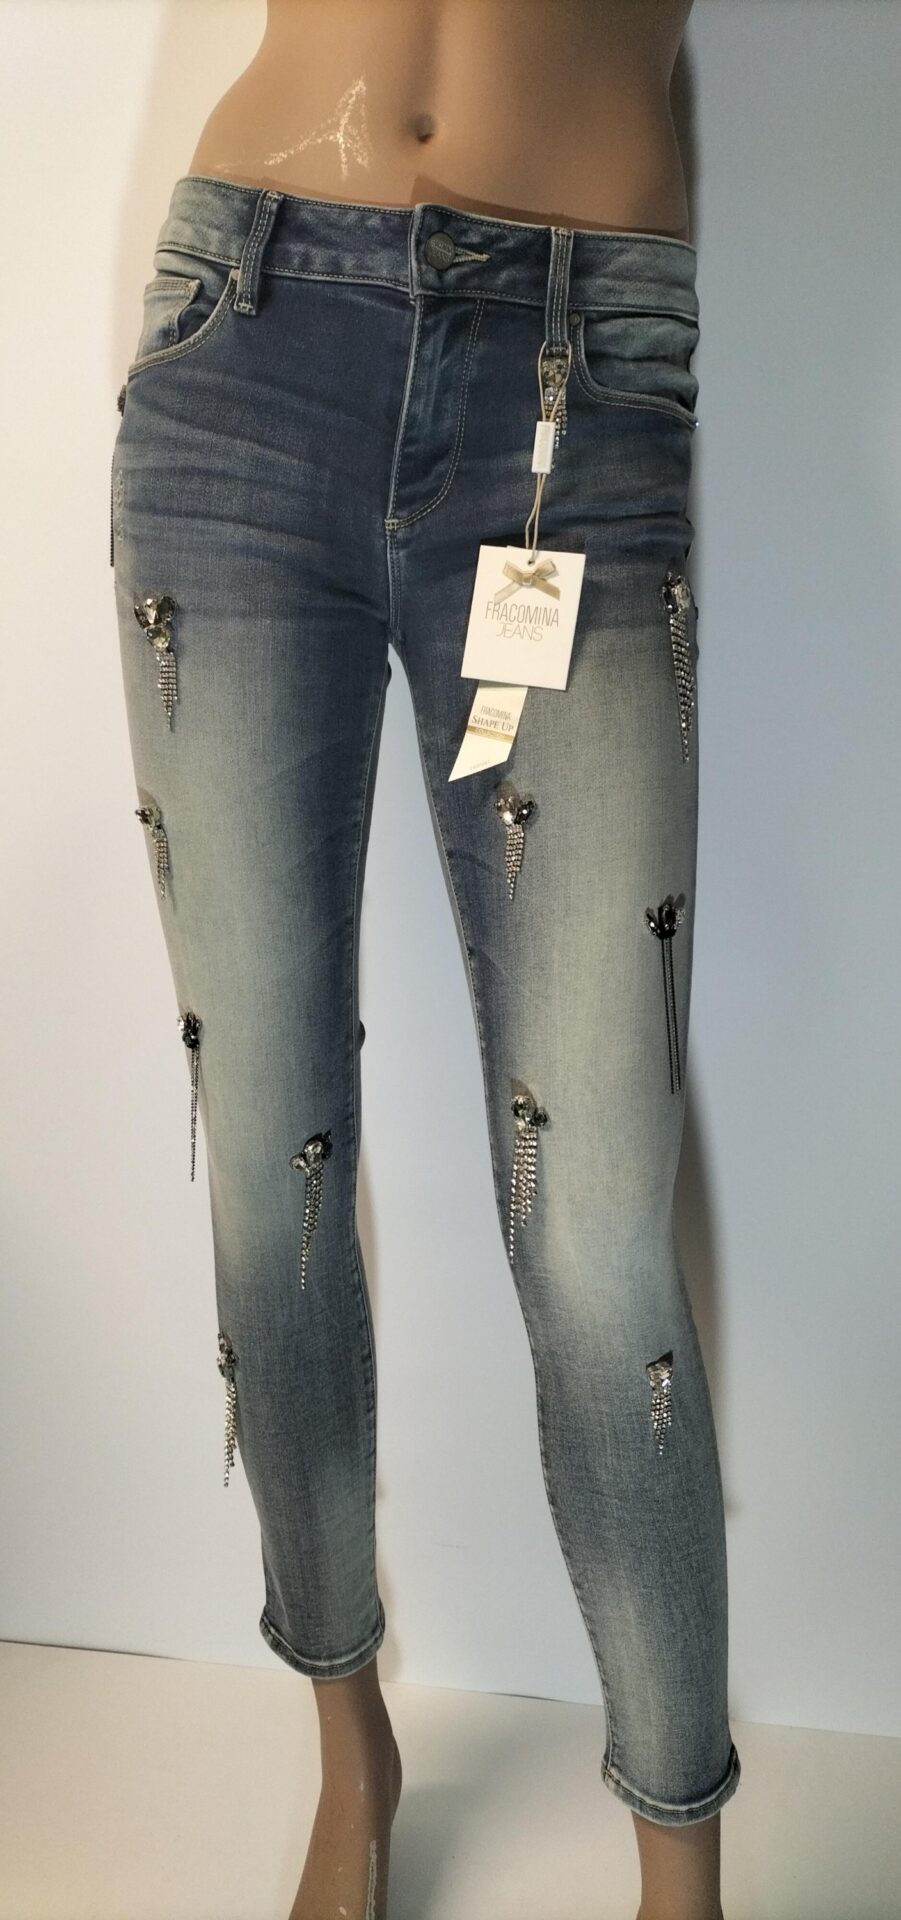 patrocinador Sueño áspero empleo Jeans Francomina | Sample Store